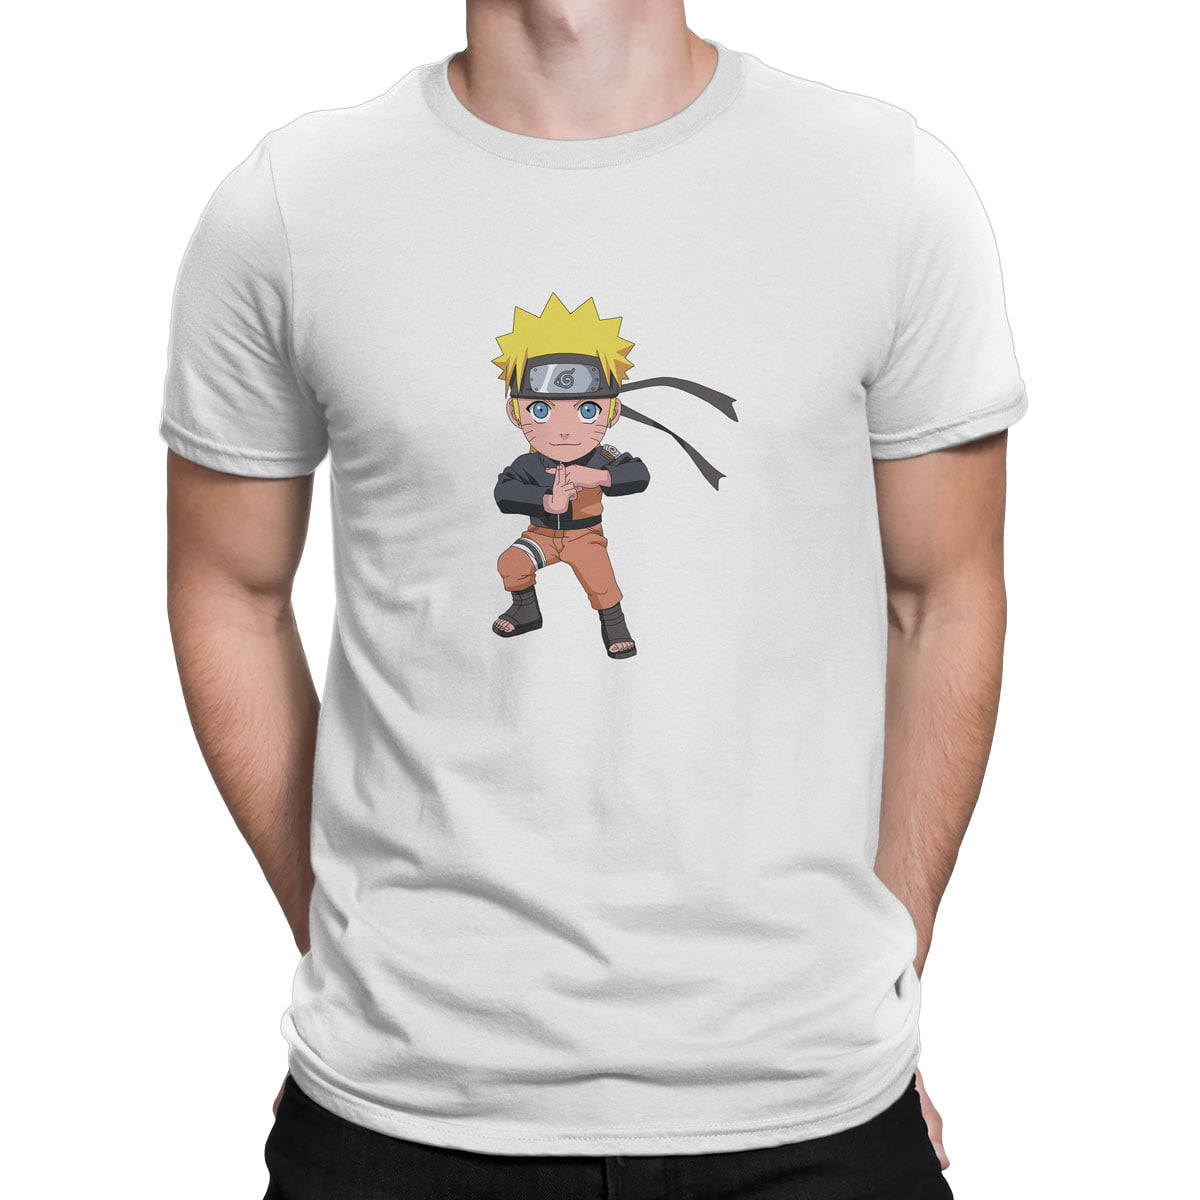 Naruto uzumaki no1 chibi tisort erkek b - naruto uzumaki chibi no1 t-shirt - figurex